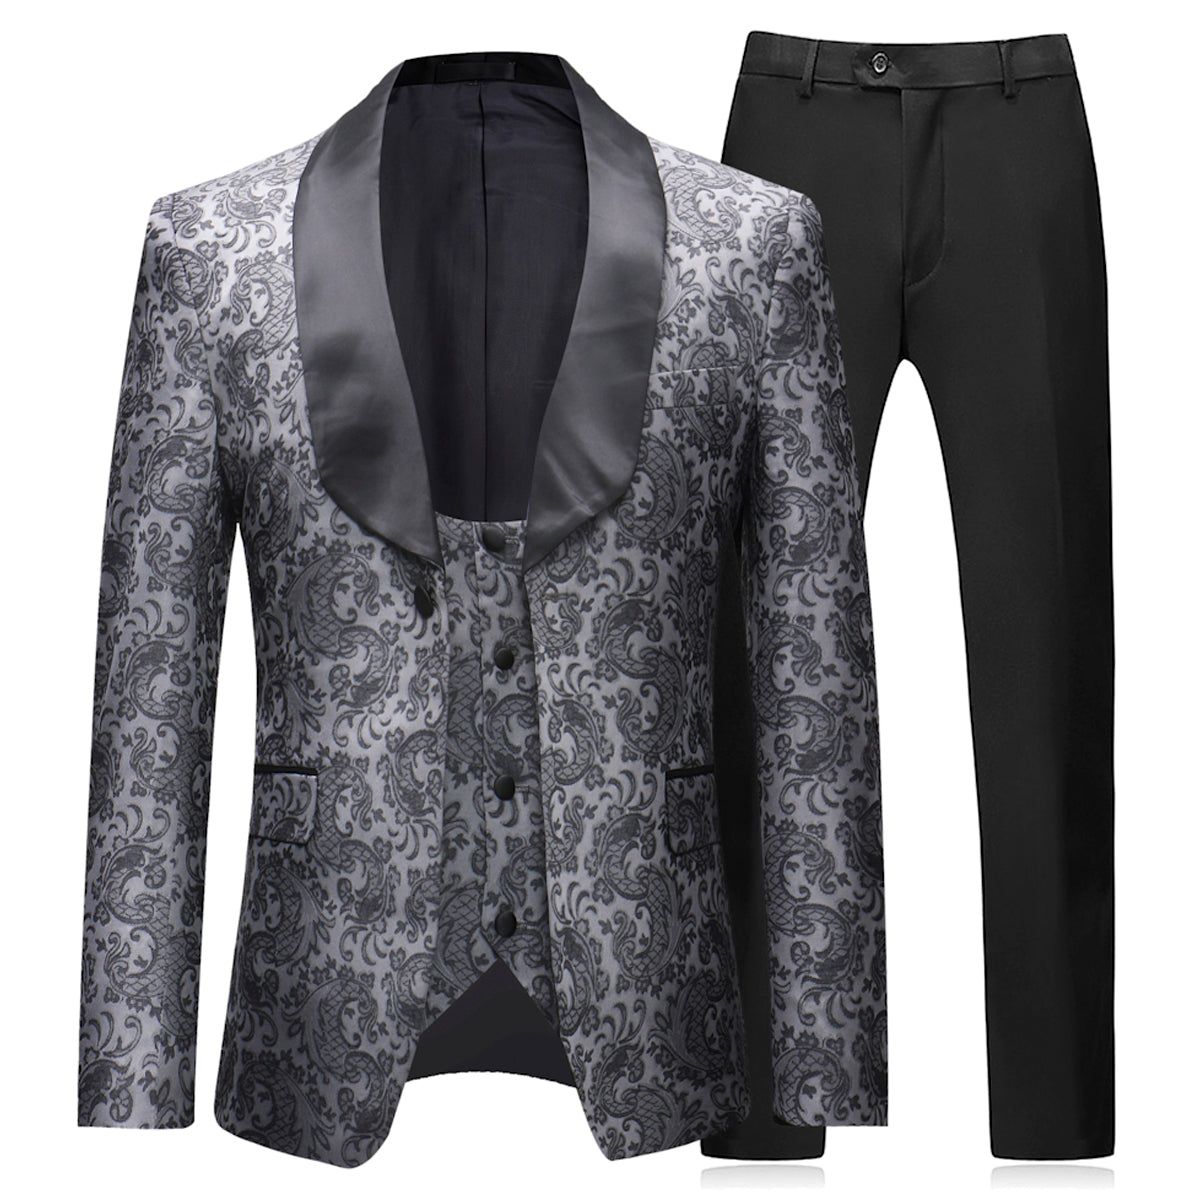 Cloudstyle Mens Slim Fit Exquisite Pattern 3 Piece Suit Black